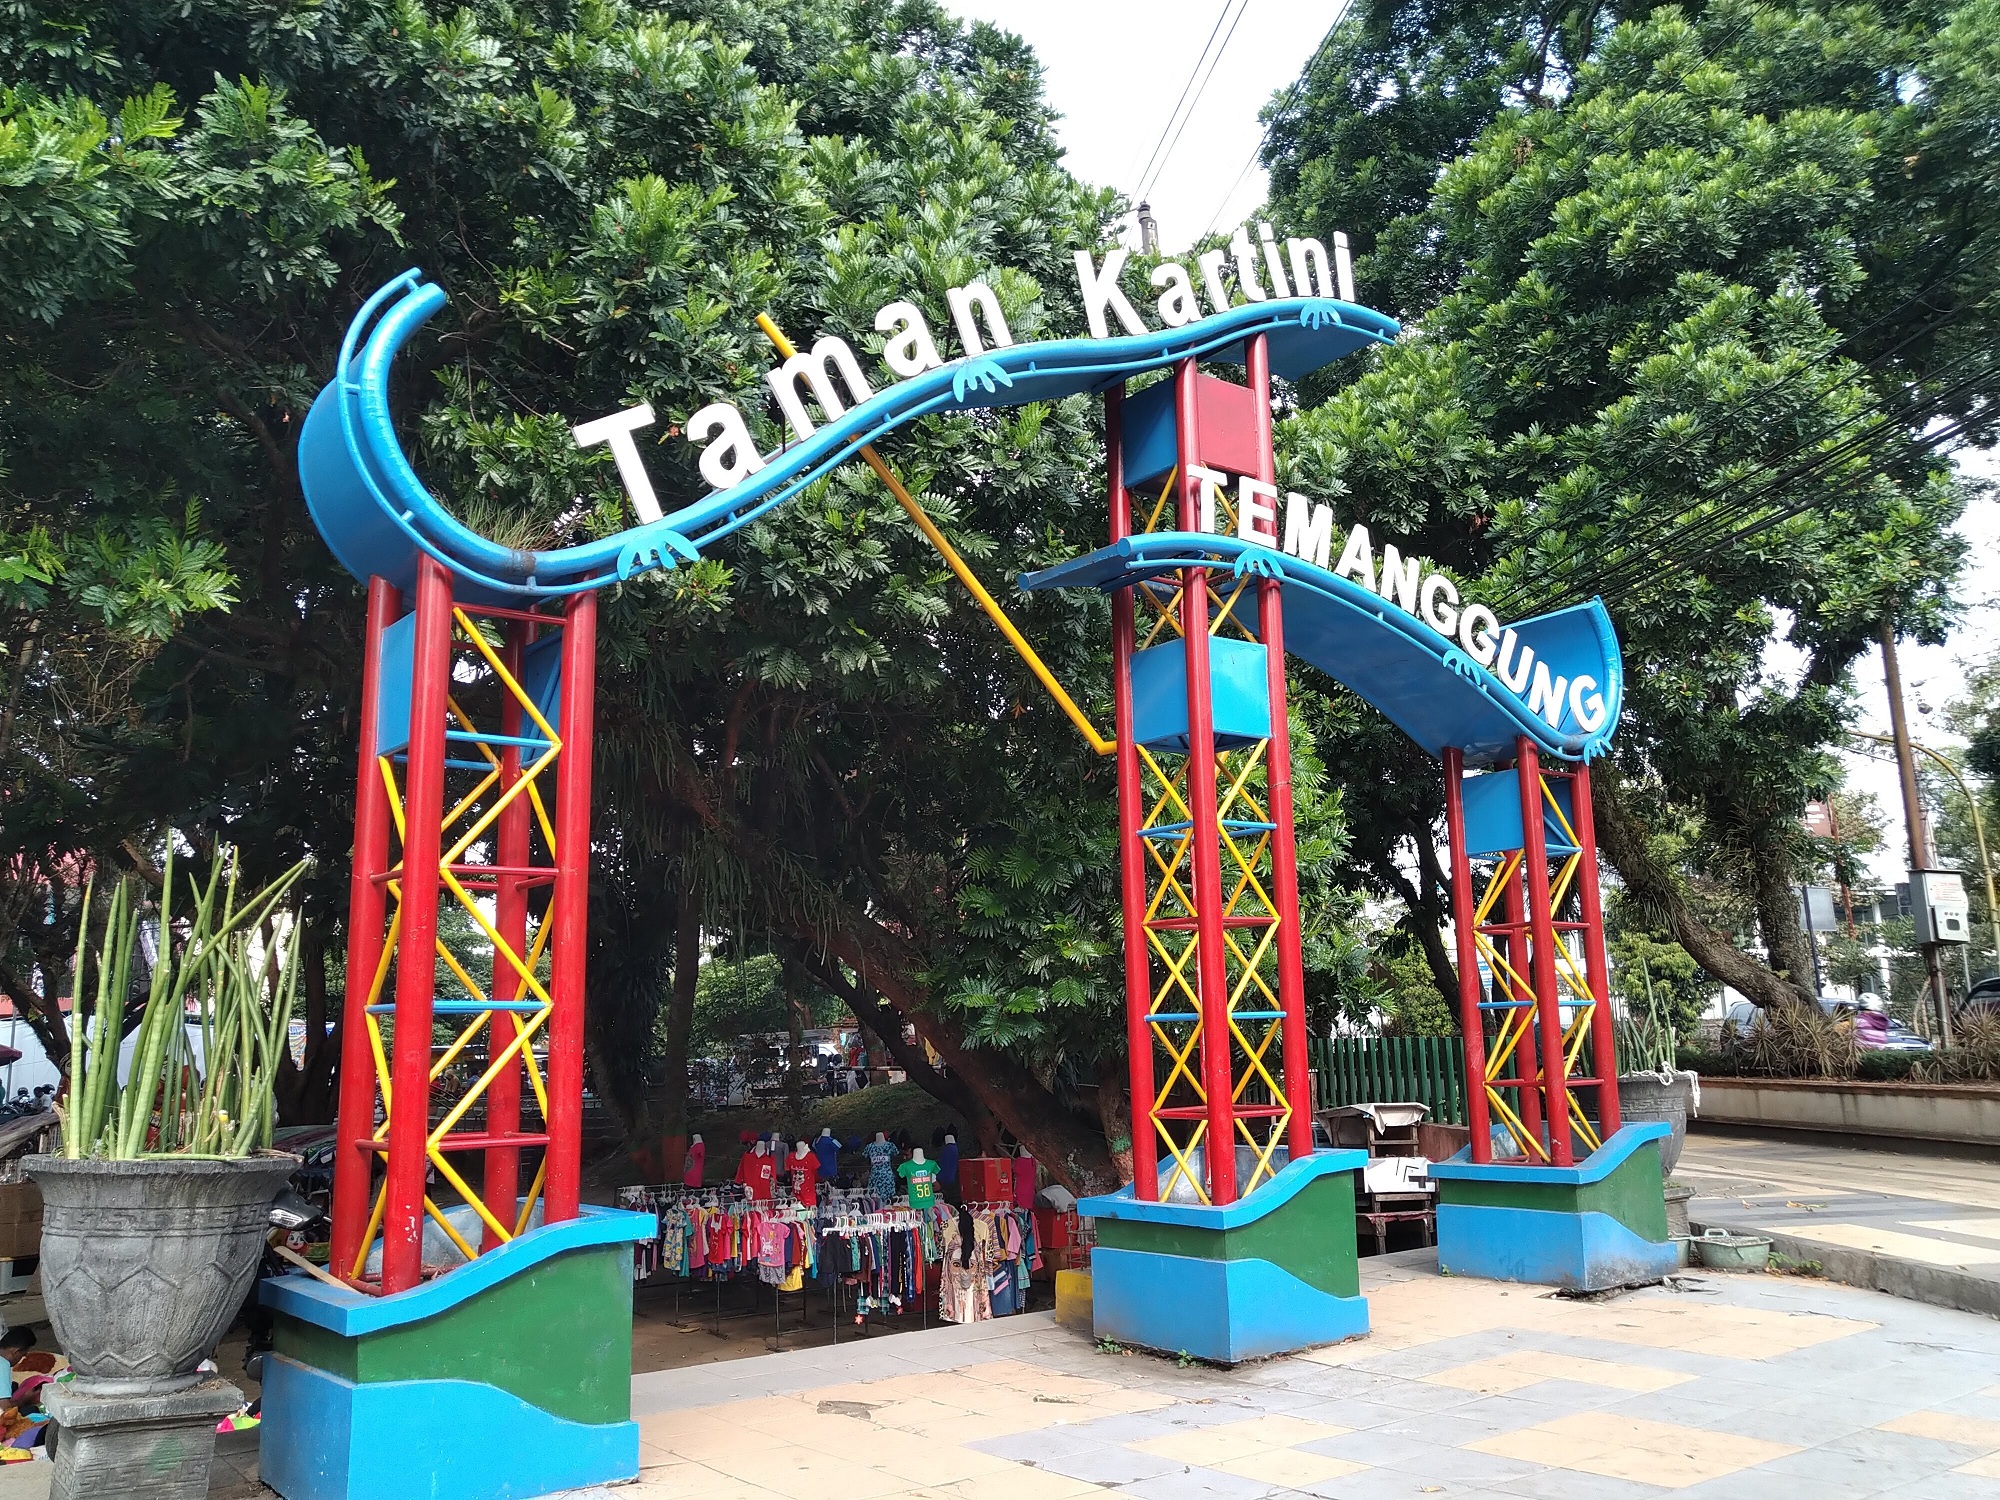 Taman Kartini menawarkan berbagai fasilitas permainan hingga kolam renang